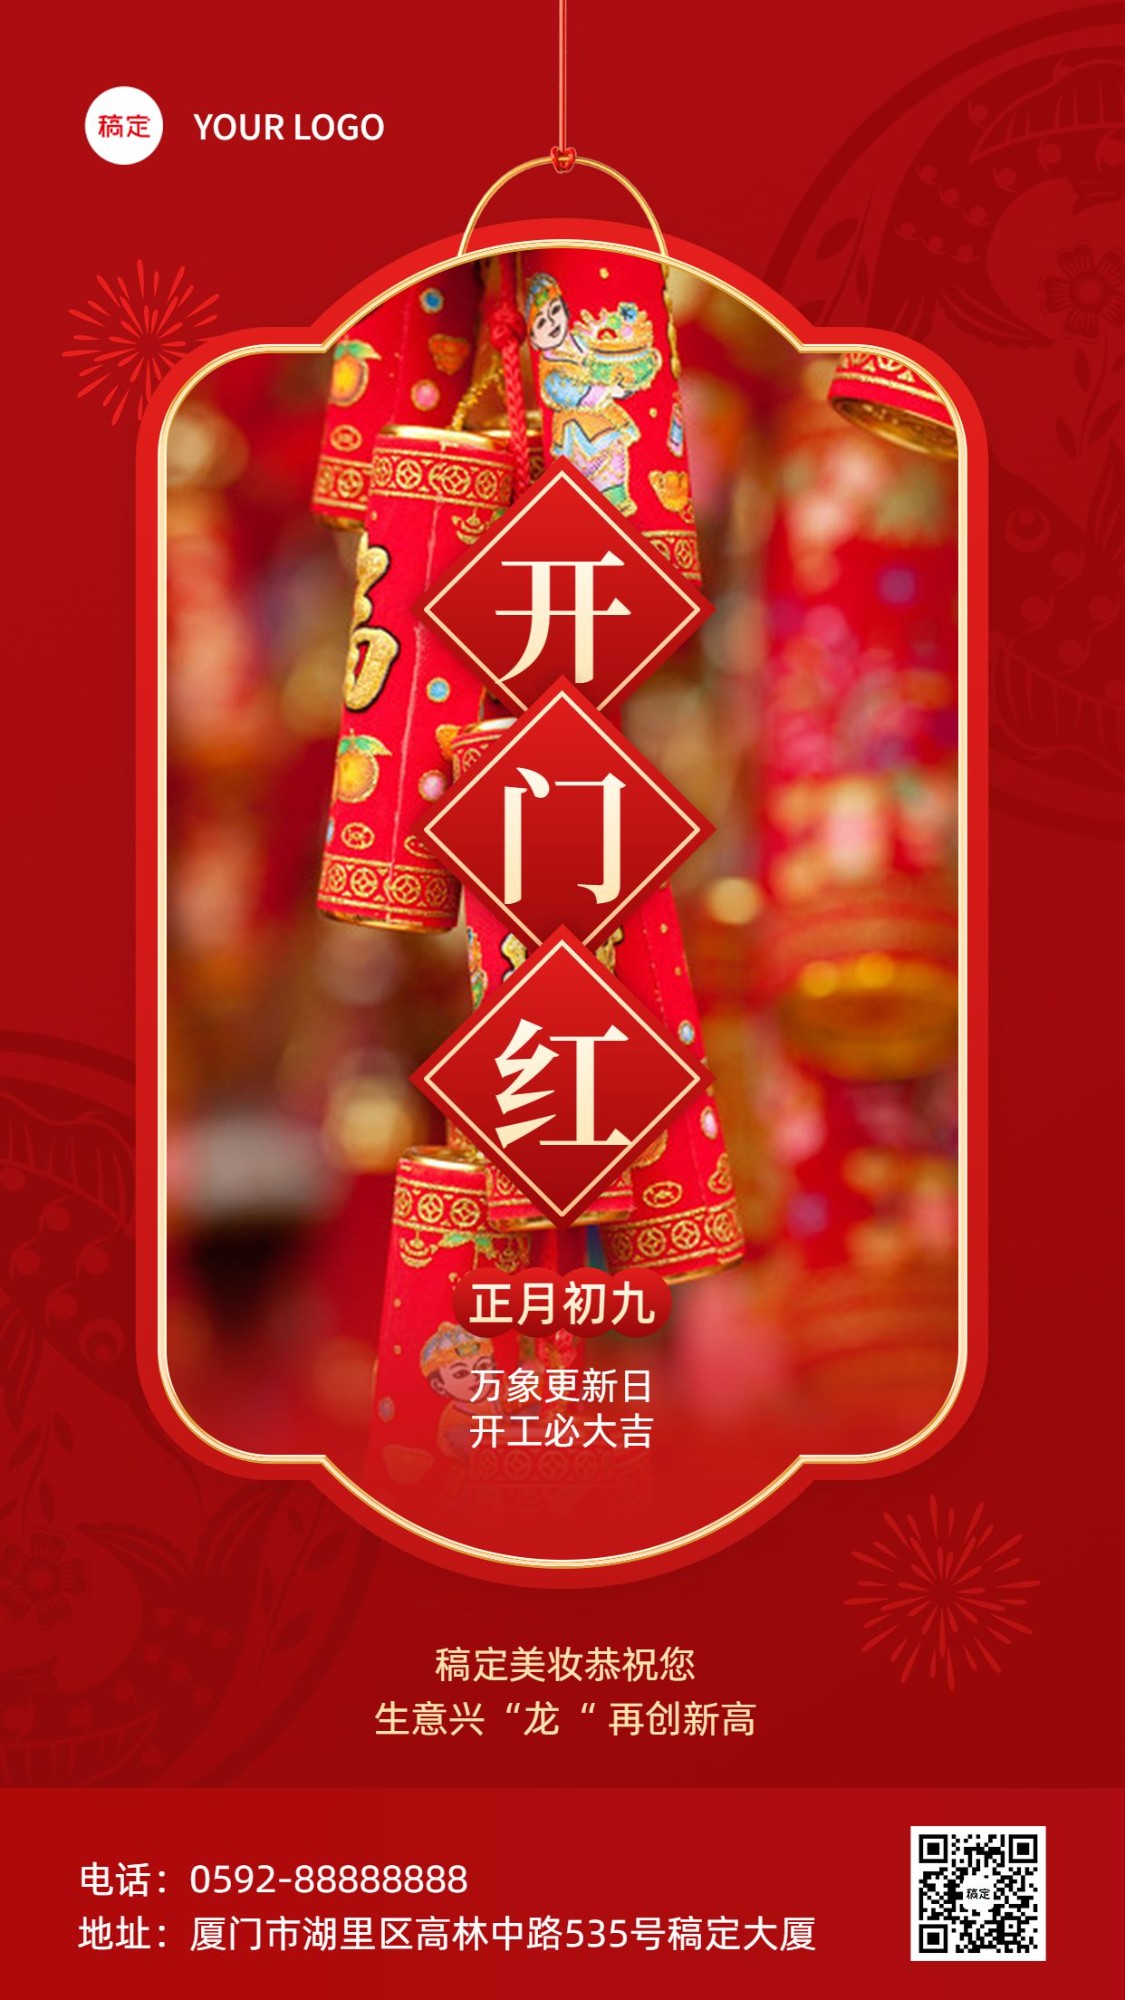 春节正月初九美容美妆节日祝福中式喜庆感套装竖版海报预览效果